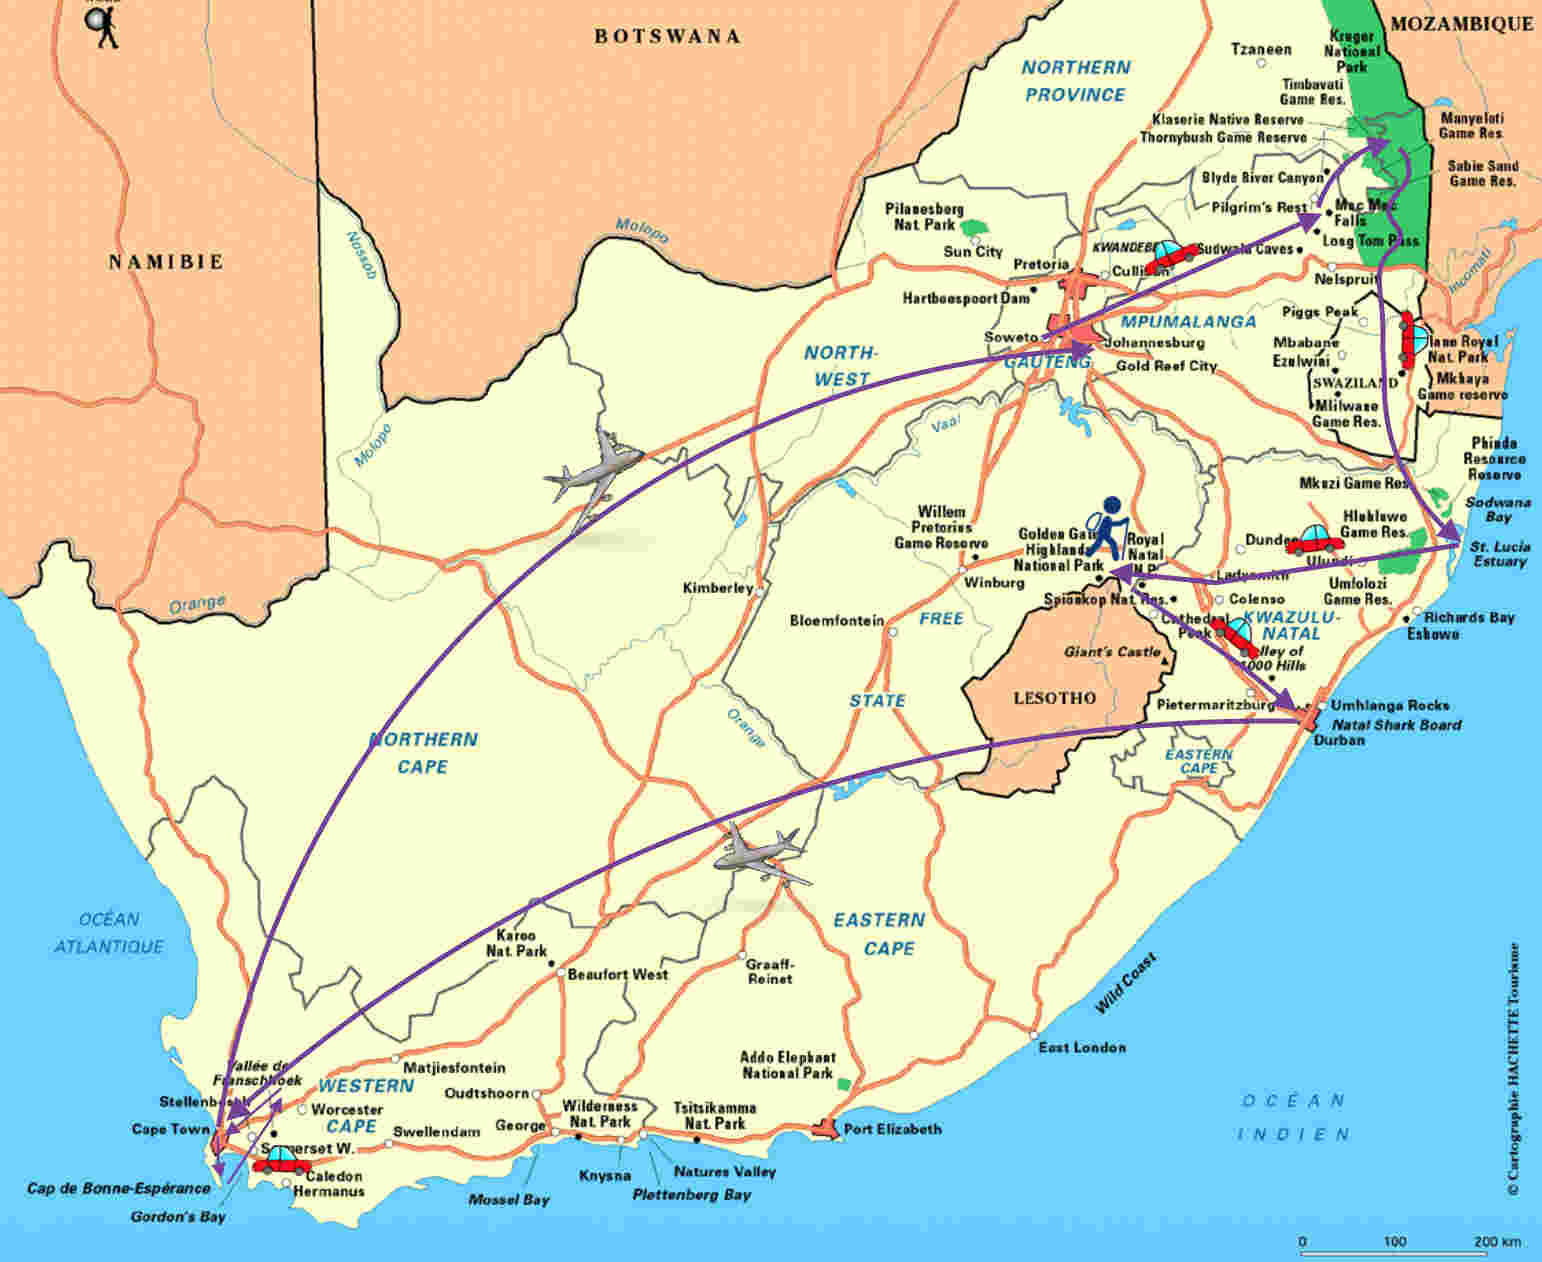 Notre itinéraire pour 3 semaines en Afrique du Sud